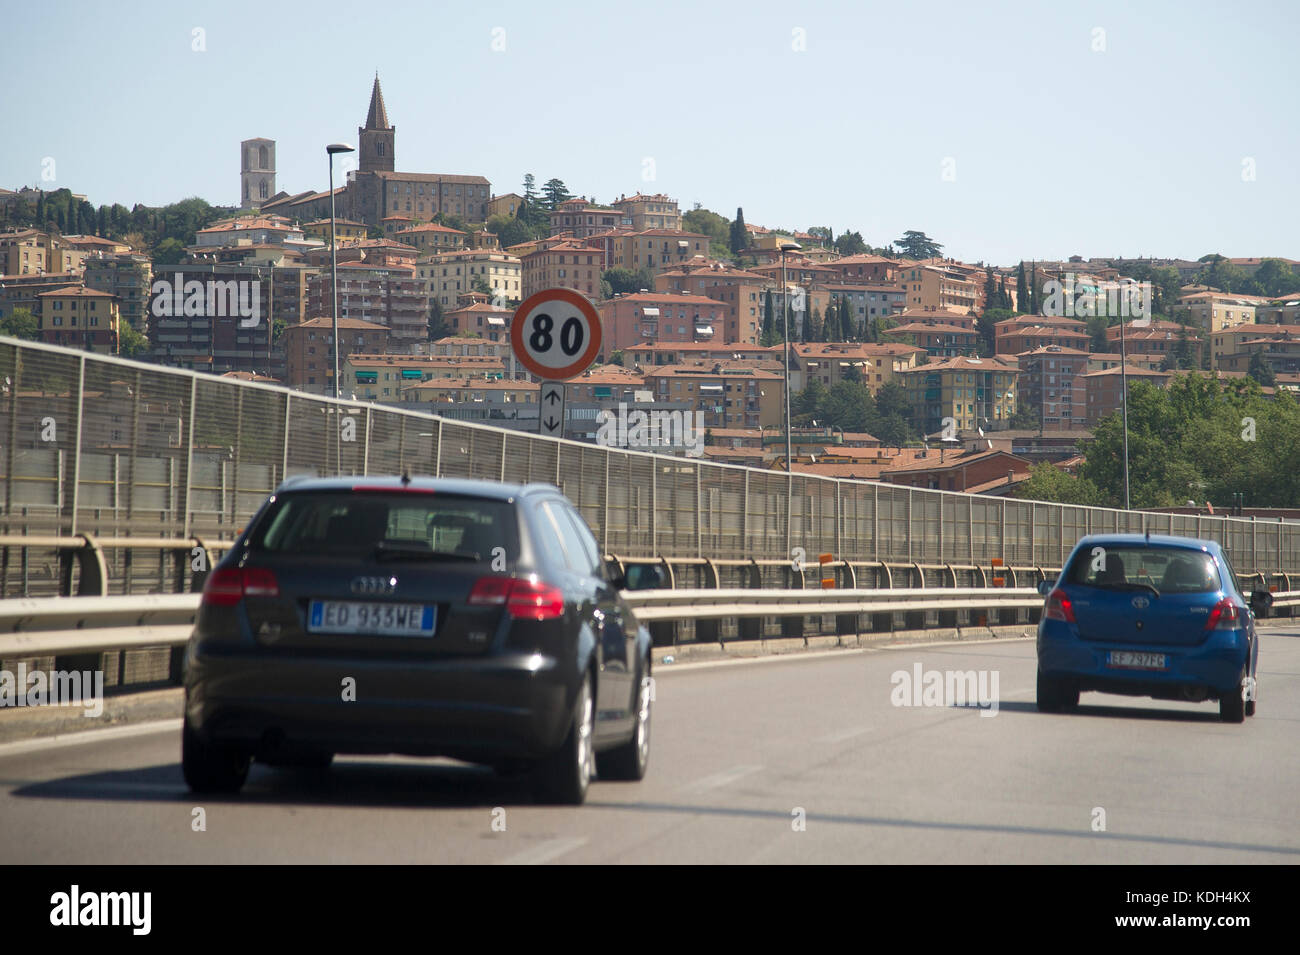 Raccordo Autostradale 6 (RA6) in Perugia, Umbrien, Italien. 27. August 2017 © wojciech Strozyk/Alamy Stock Foto Stockfoto